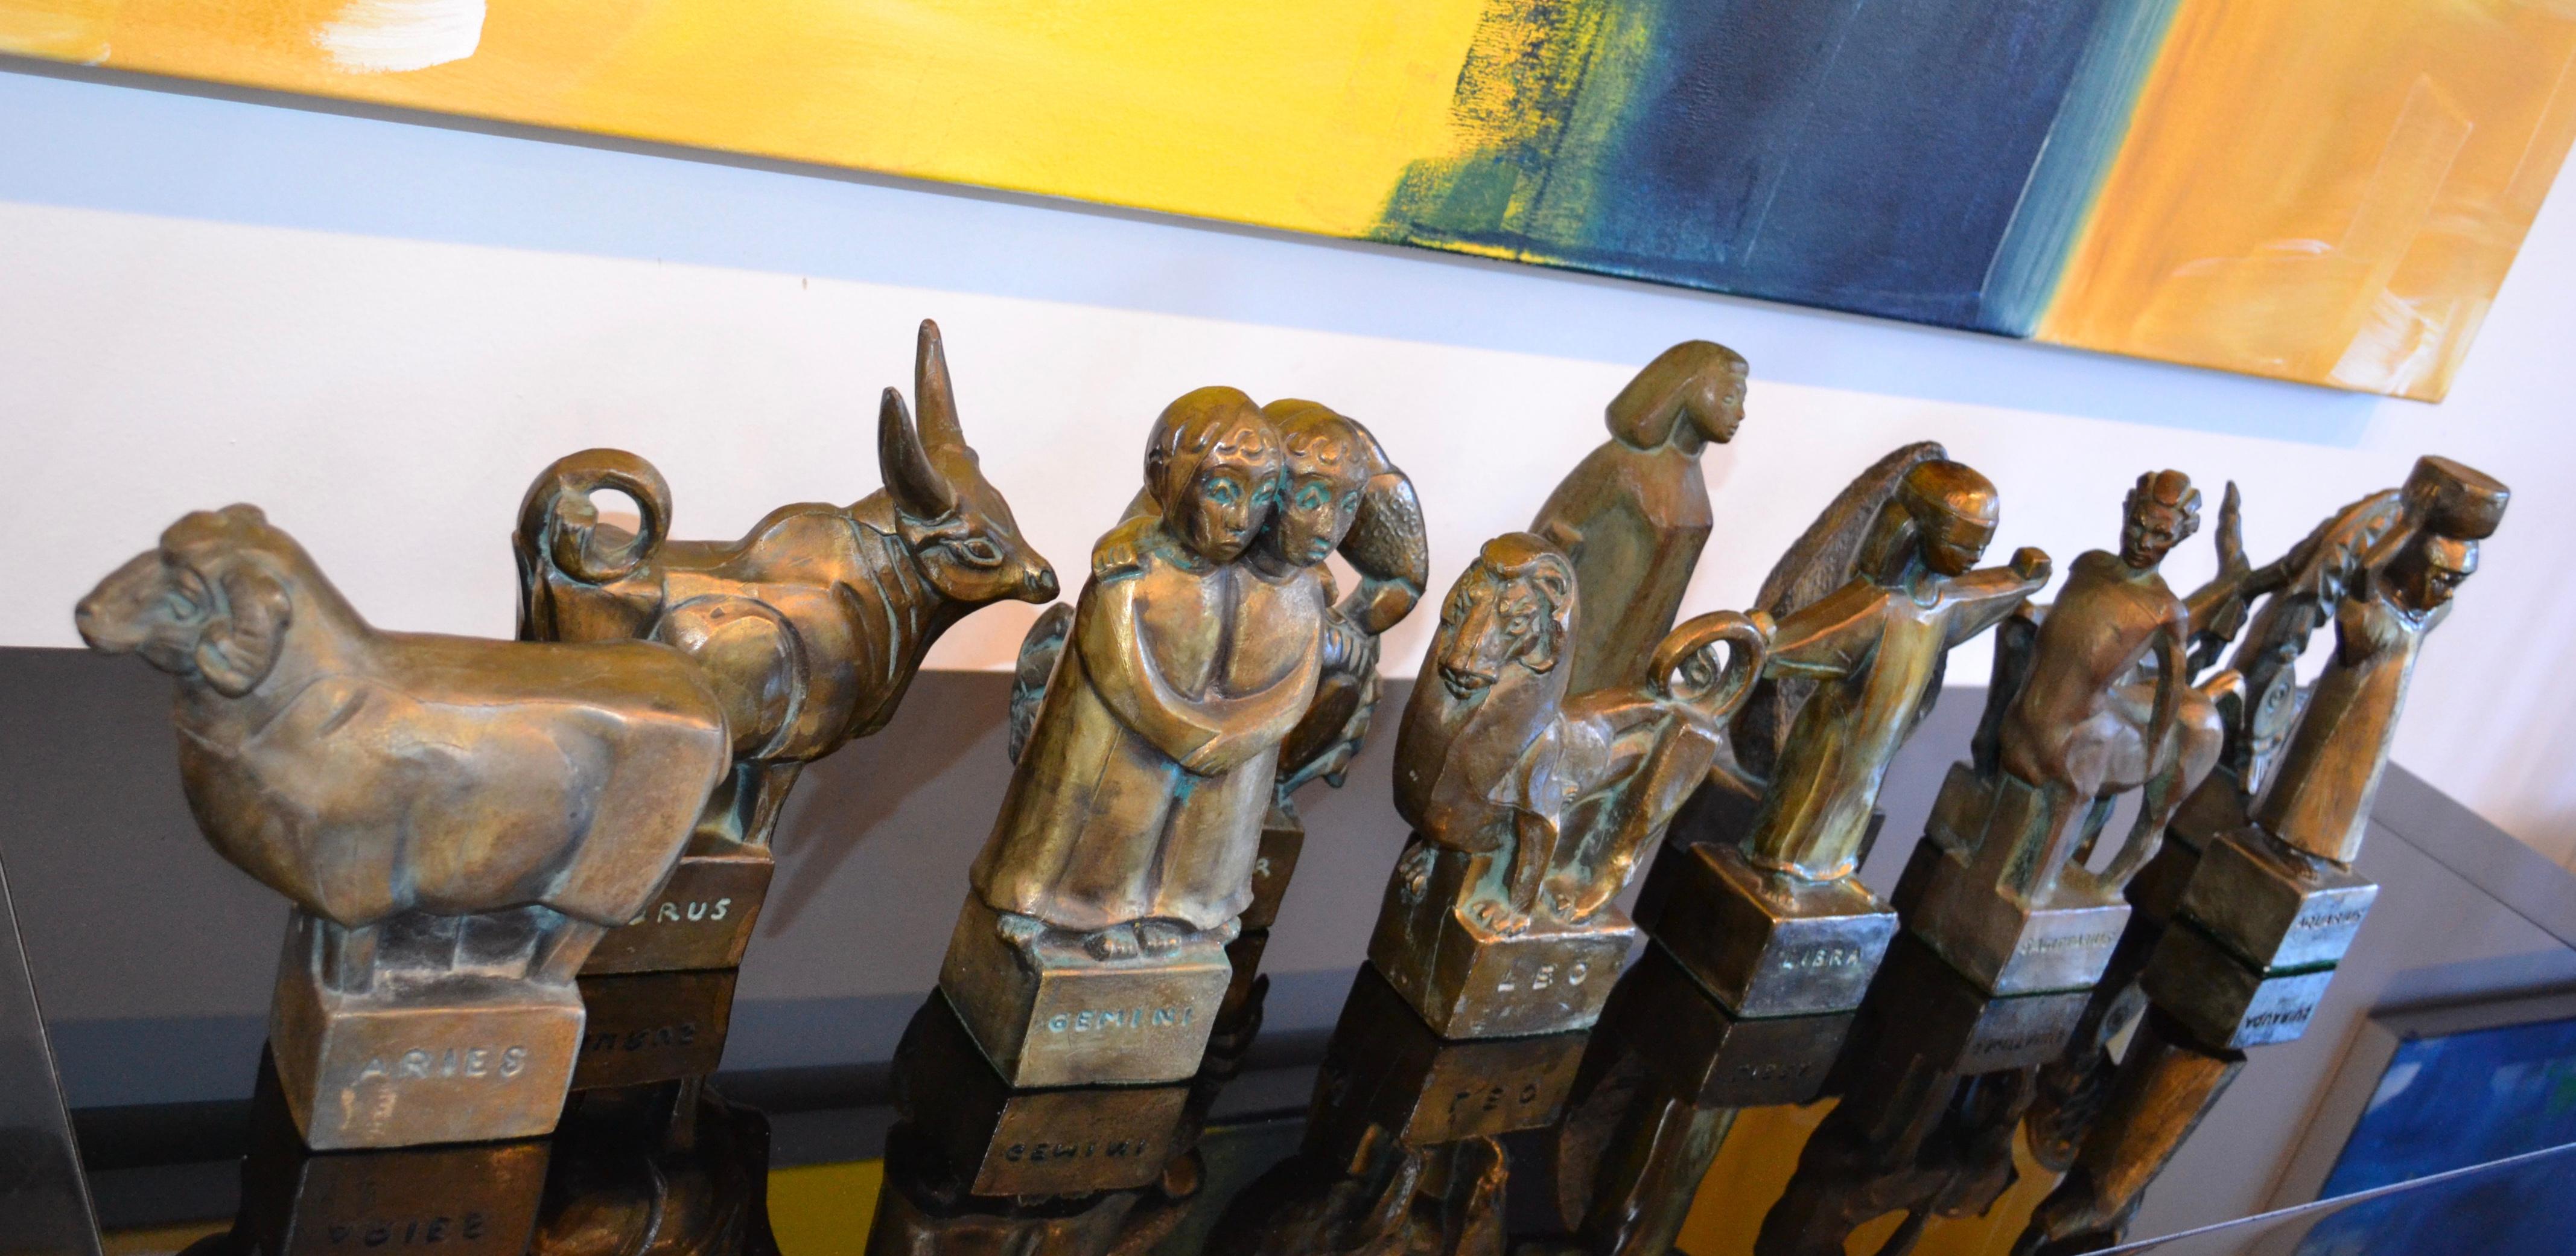 Très rare ensemble de 12 sculptures brutalistes en bronze coulé de signes astrologiques par Fred Press. Chaque signe du Zodiac représenté, belle ancienneté et patine. 

Au début des années 1950, M. Press s'est installé à New York et, pendant les